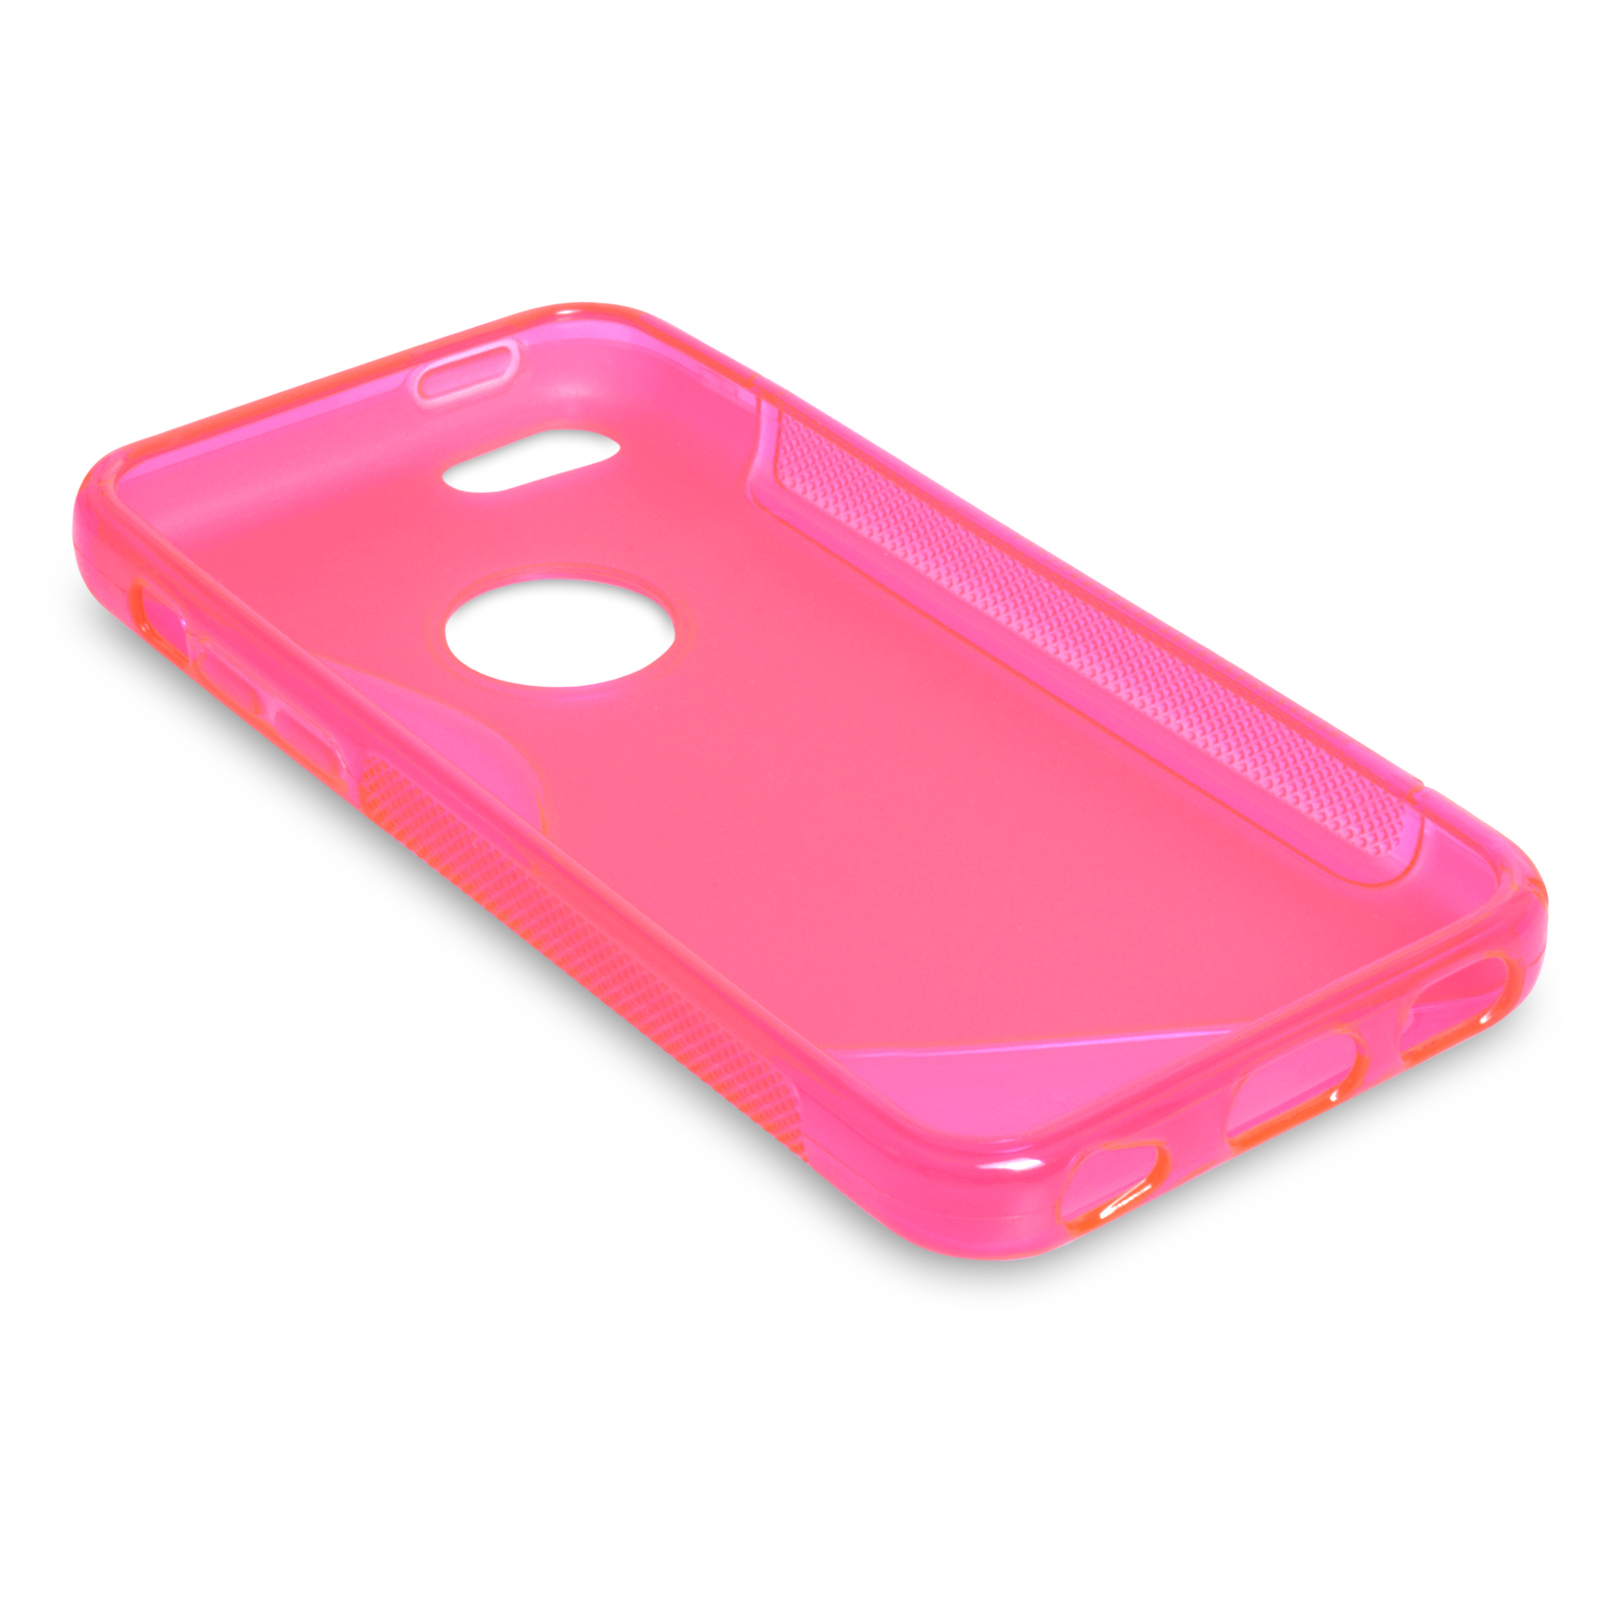 Caseflex iPhone 5c Silicone Gel S-Line Case - Hot Pink